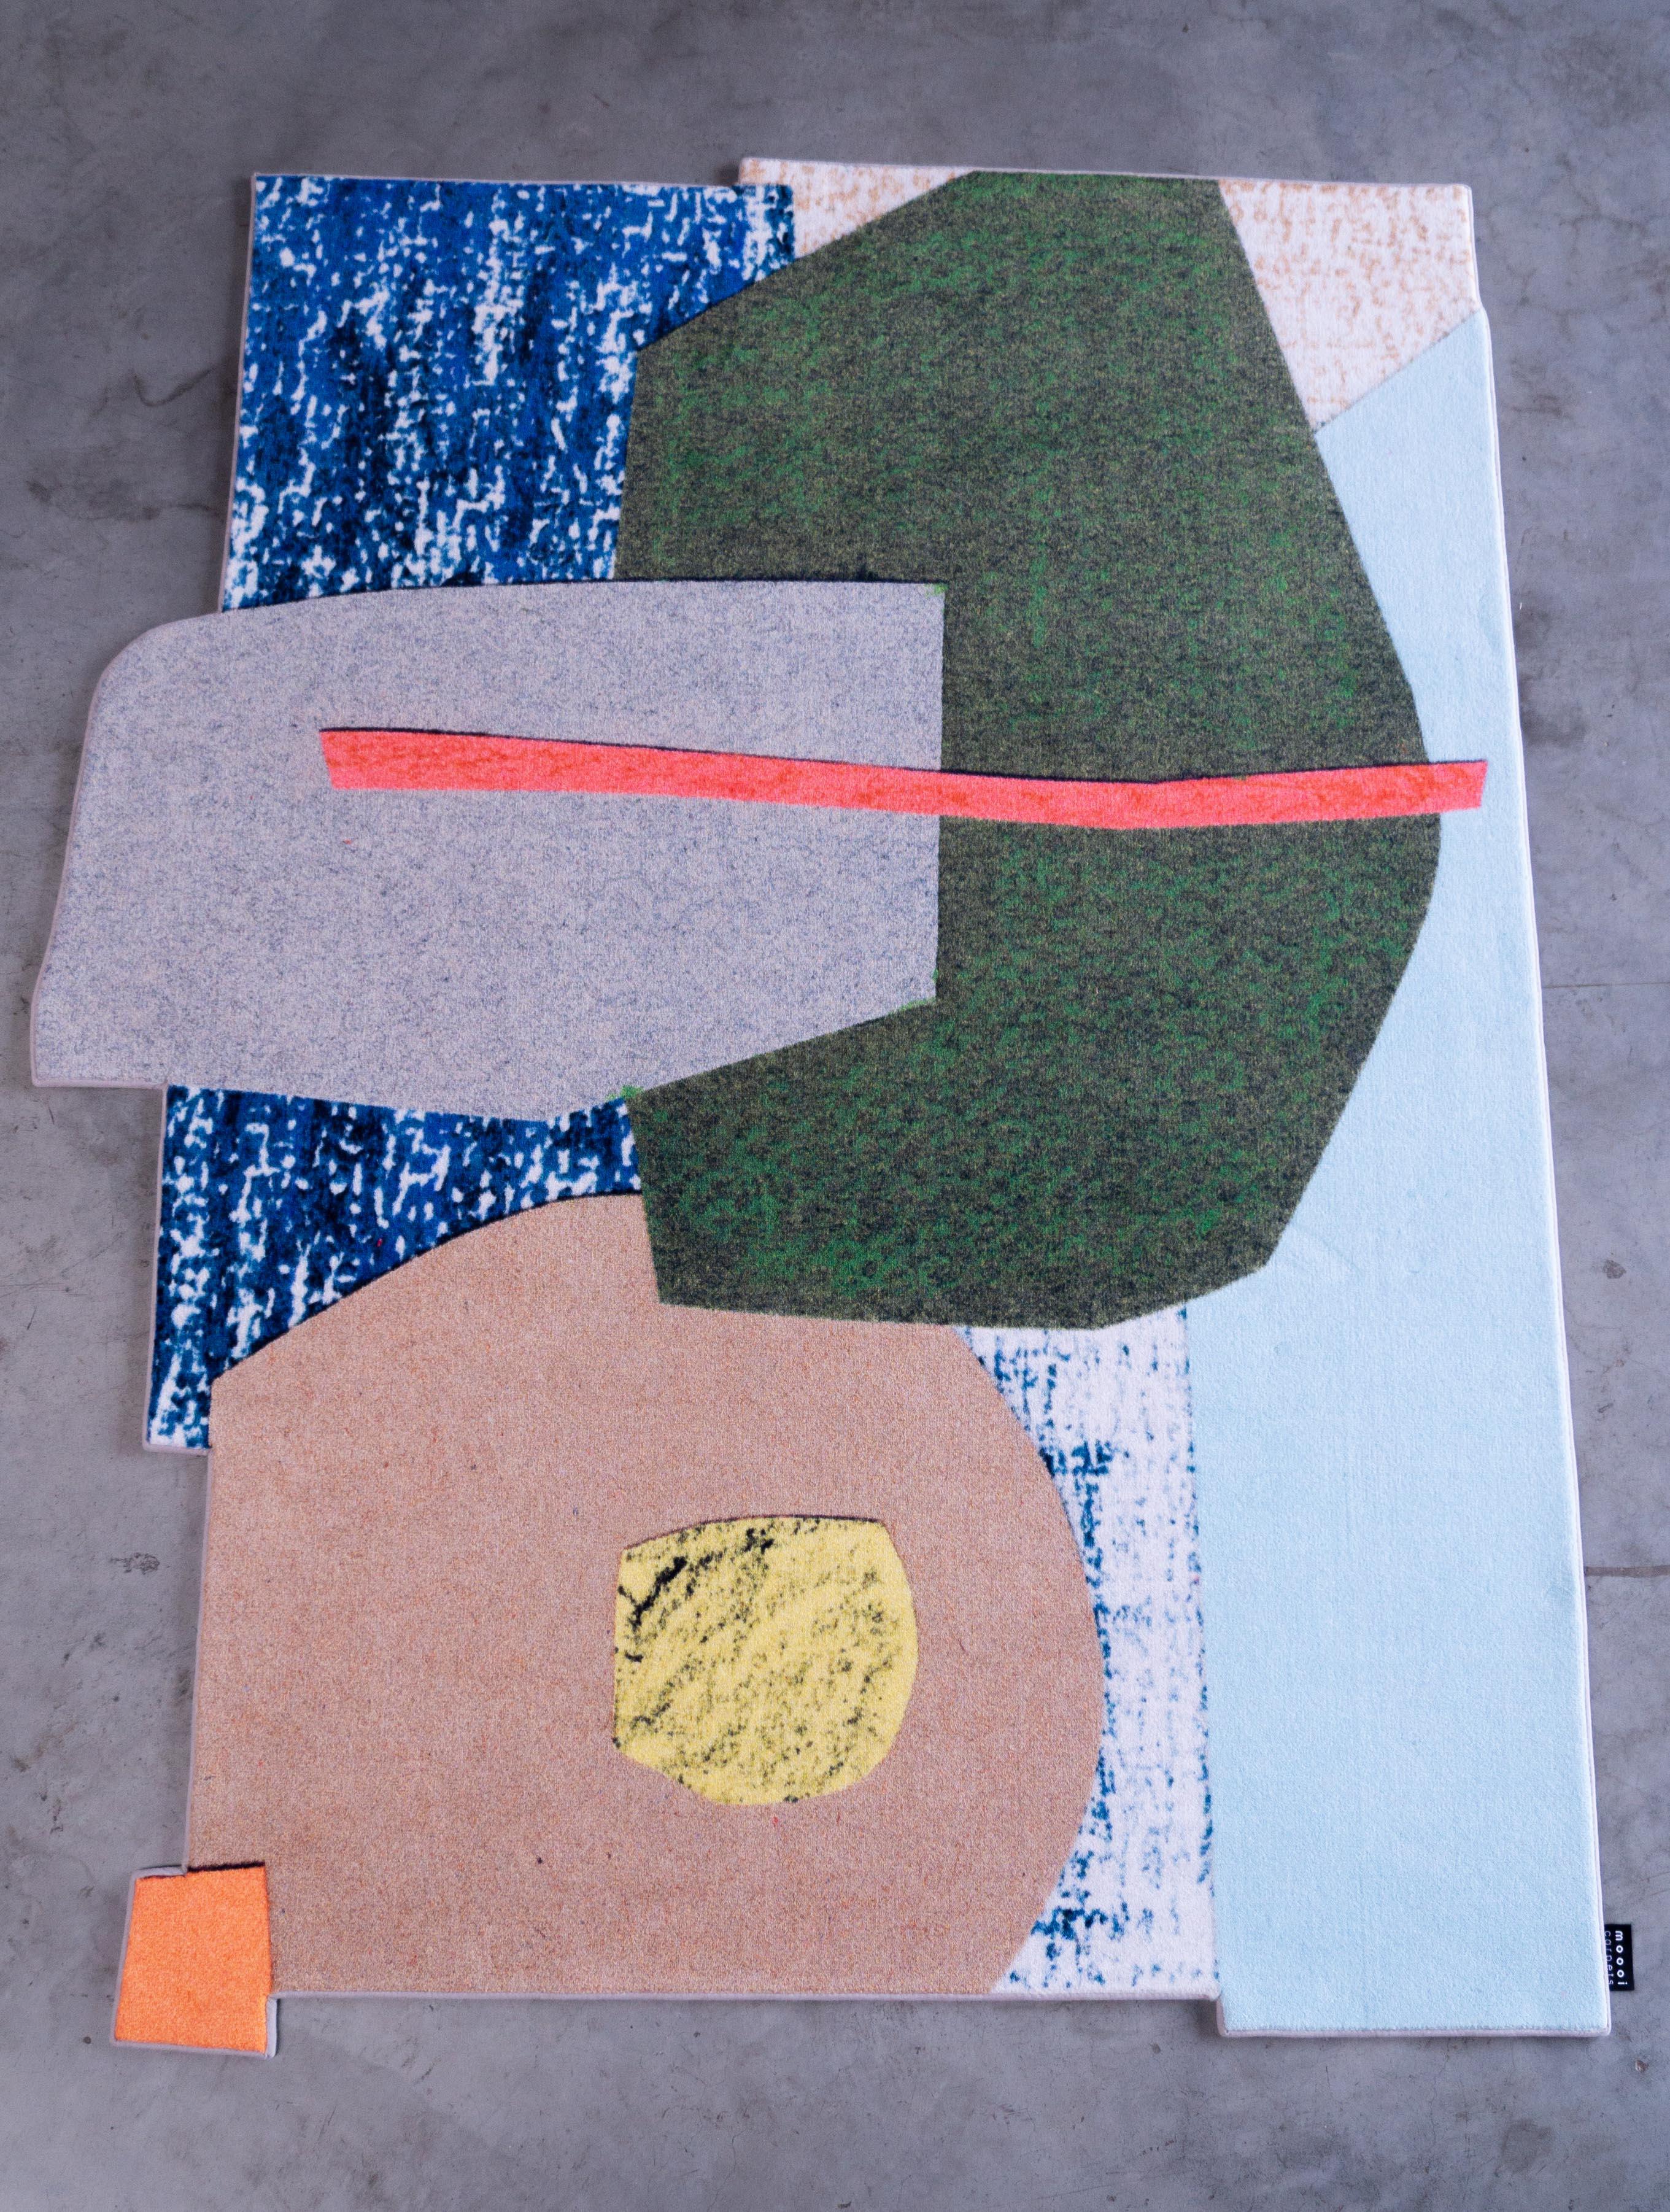 Moooi Large Collage tapis en Polyamide Soft Yarn par Kiki Van Eijk

Kiki a grandi à Tegelen, une petite ville des Pays-Bas où elle a passé sa jeunesse immergée dans la nature à rêvasser et à dessiner. Son intérêt pour la conception de produits